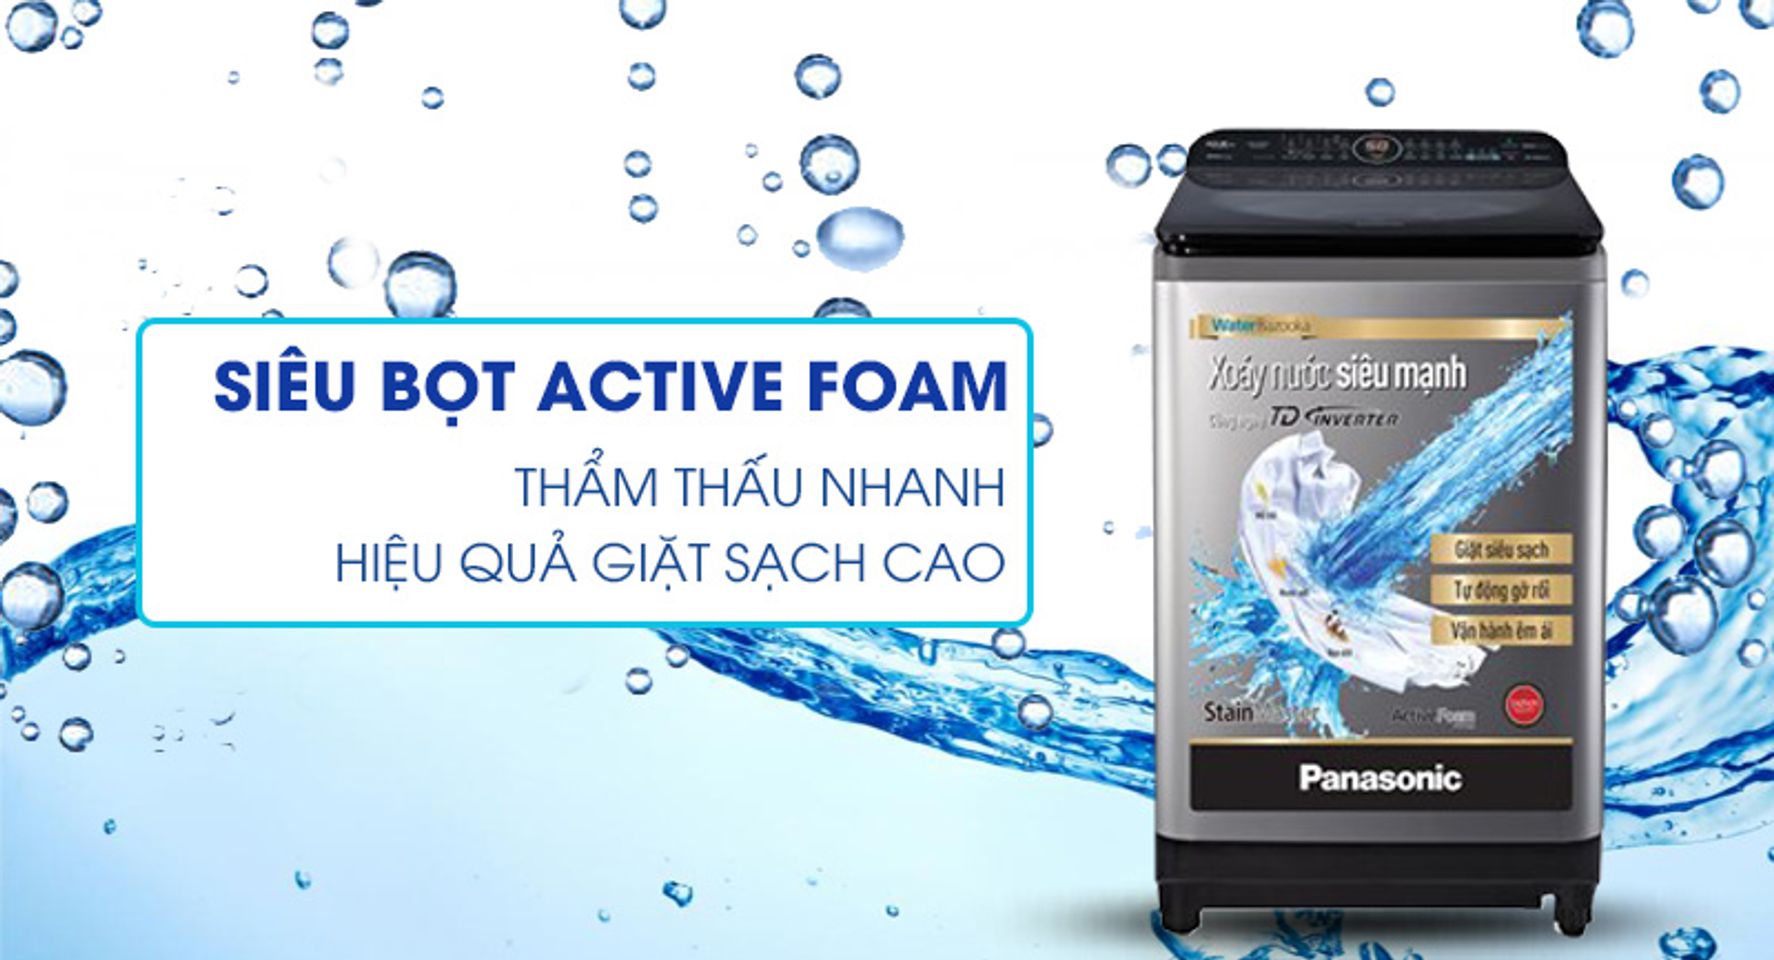 Máy giặt Panasonic lồng đứng được trang bị công nghệ Active Foam